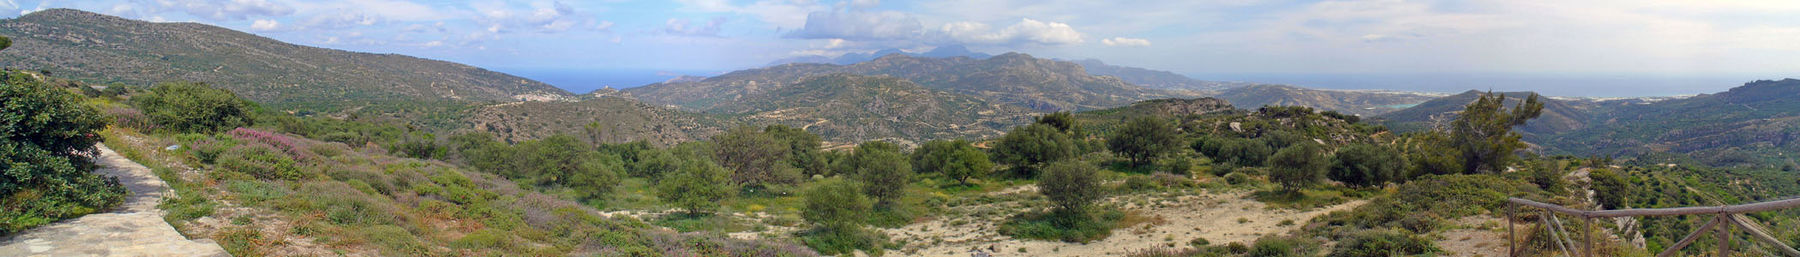 Crete Banner.jpg